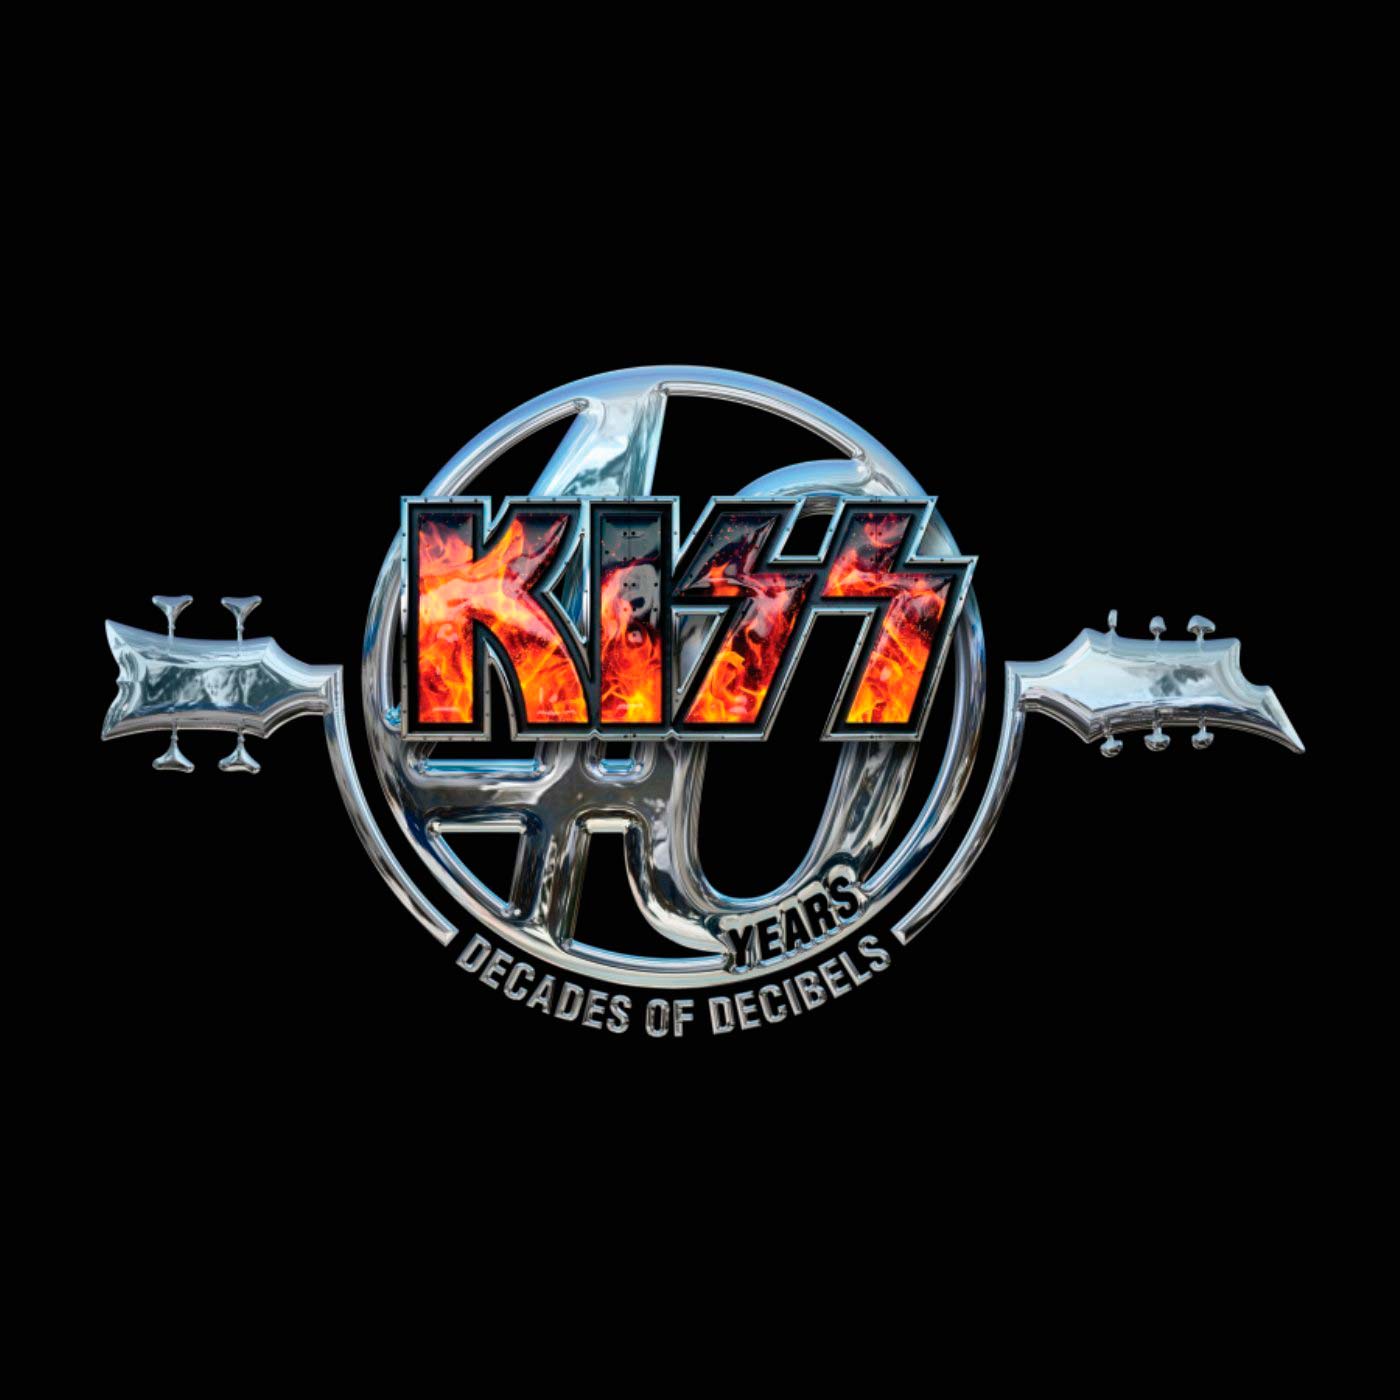 Kiss: 40 years - 4 decades of decibels, la portada del disco